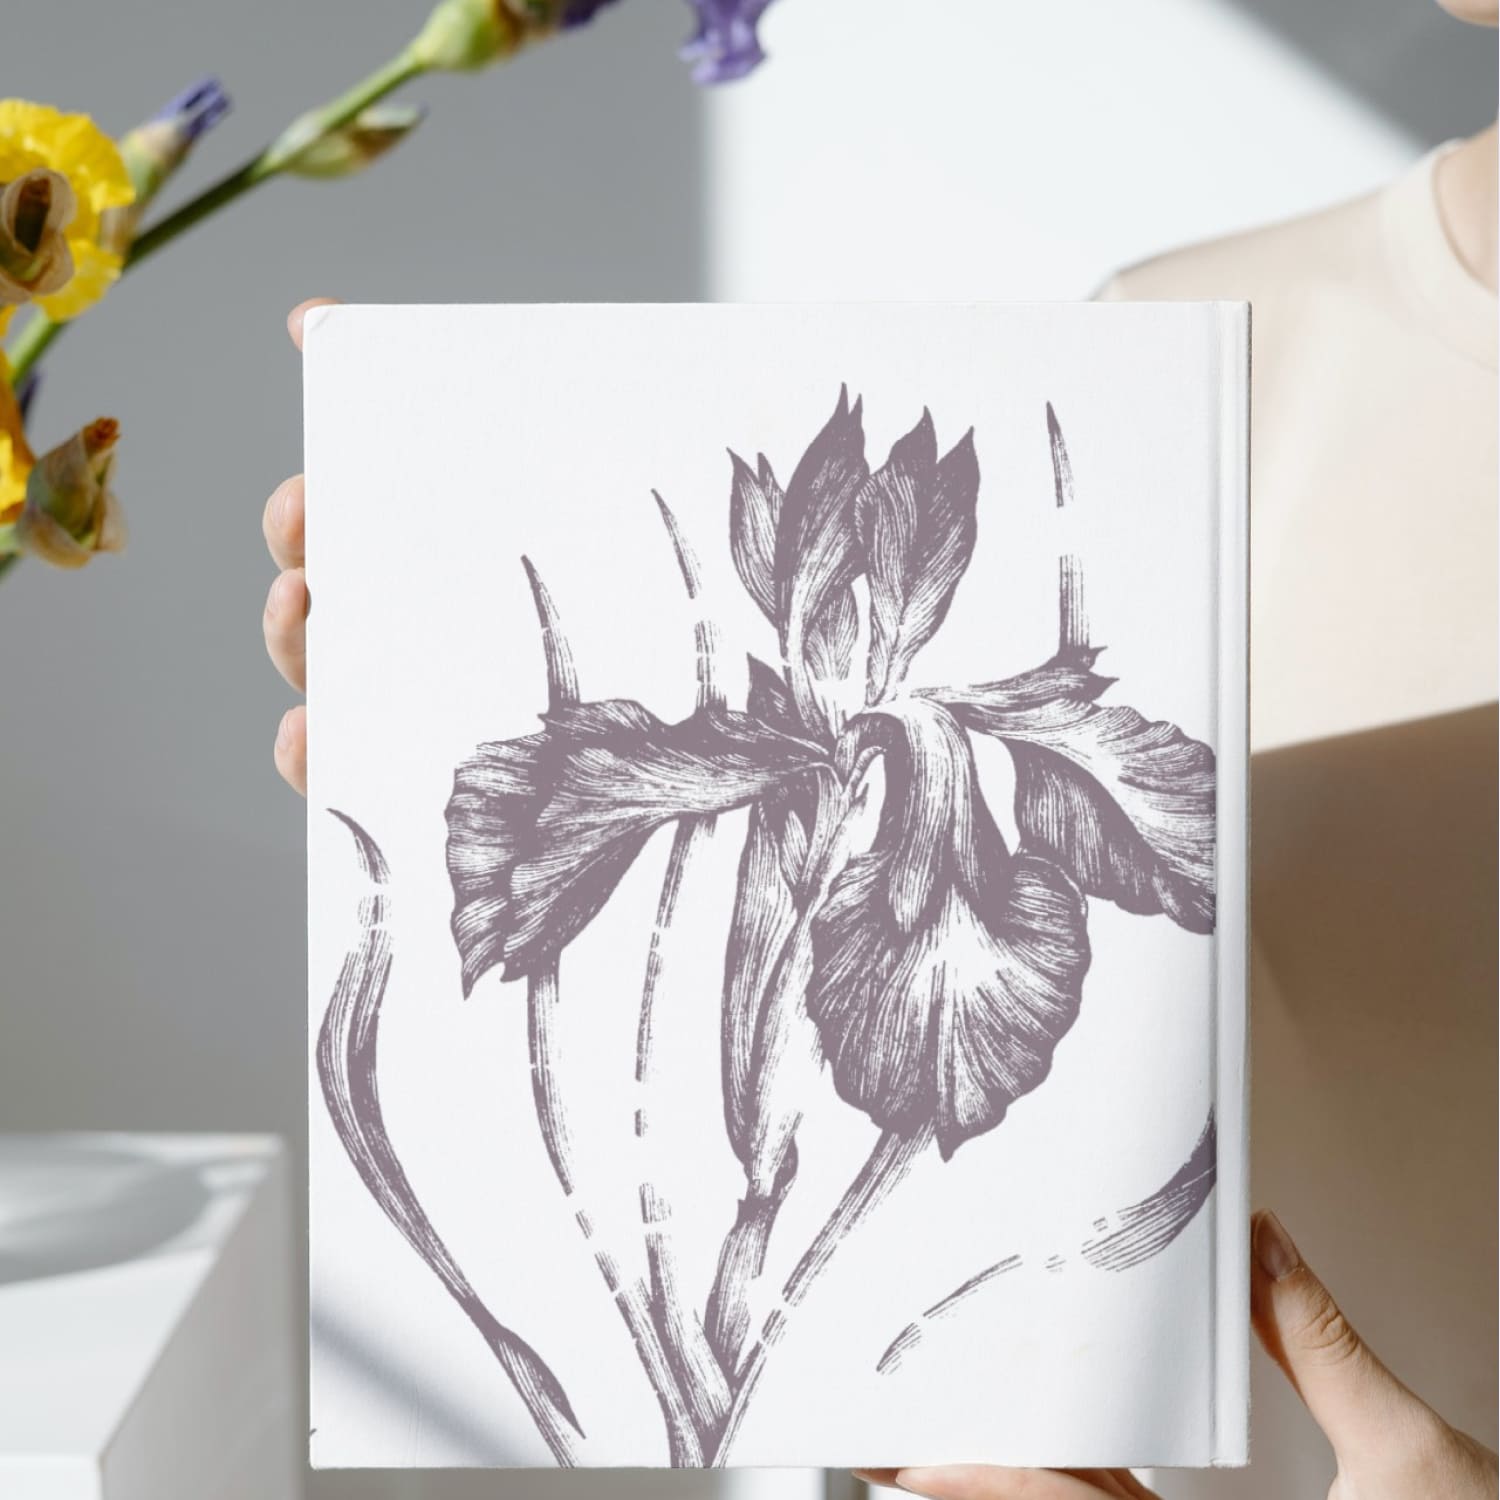 English Iris Botanical Illustration cover image.